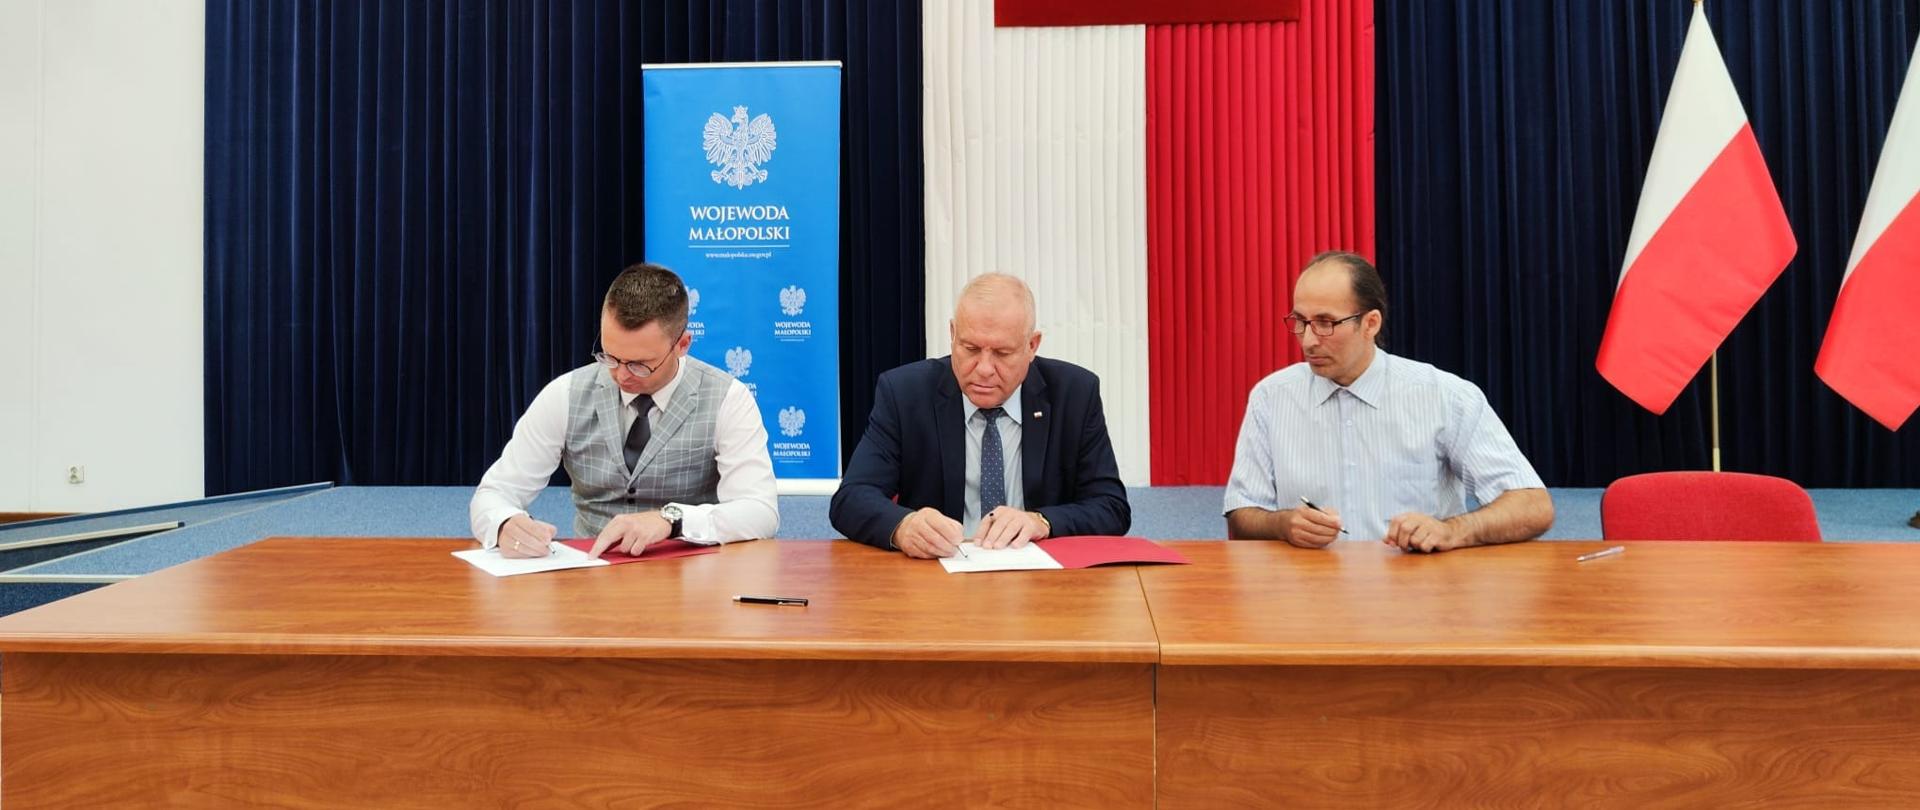 zdjęcie przedstawia od lewej Wójta Gminy Wietrzychowice, wicewojewodę małopolskiego oraz skarbnika gminy Wietrzychowice w trakcie podpisywania umowy